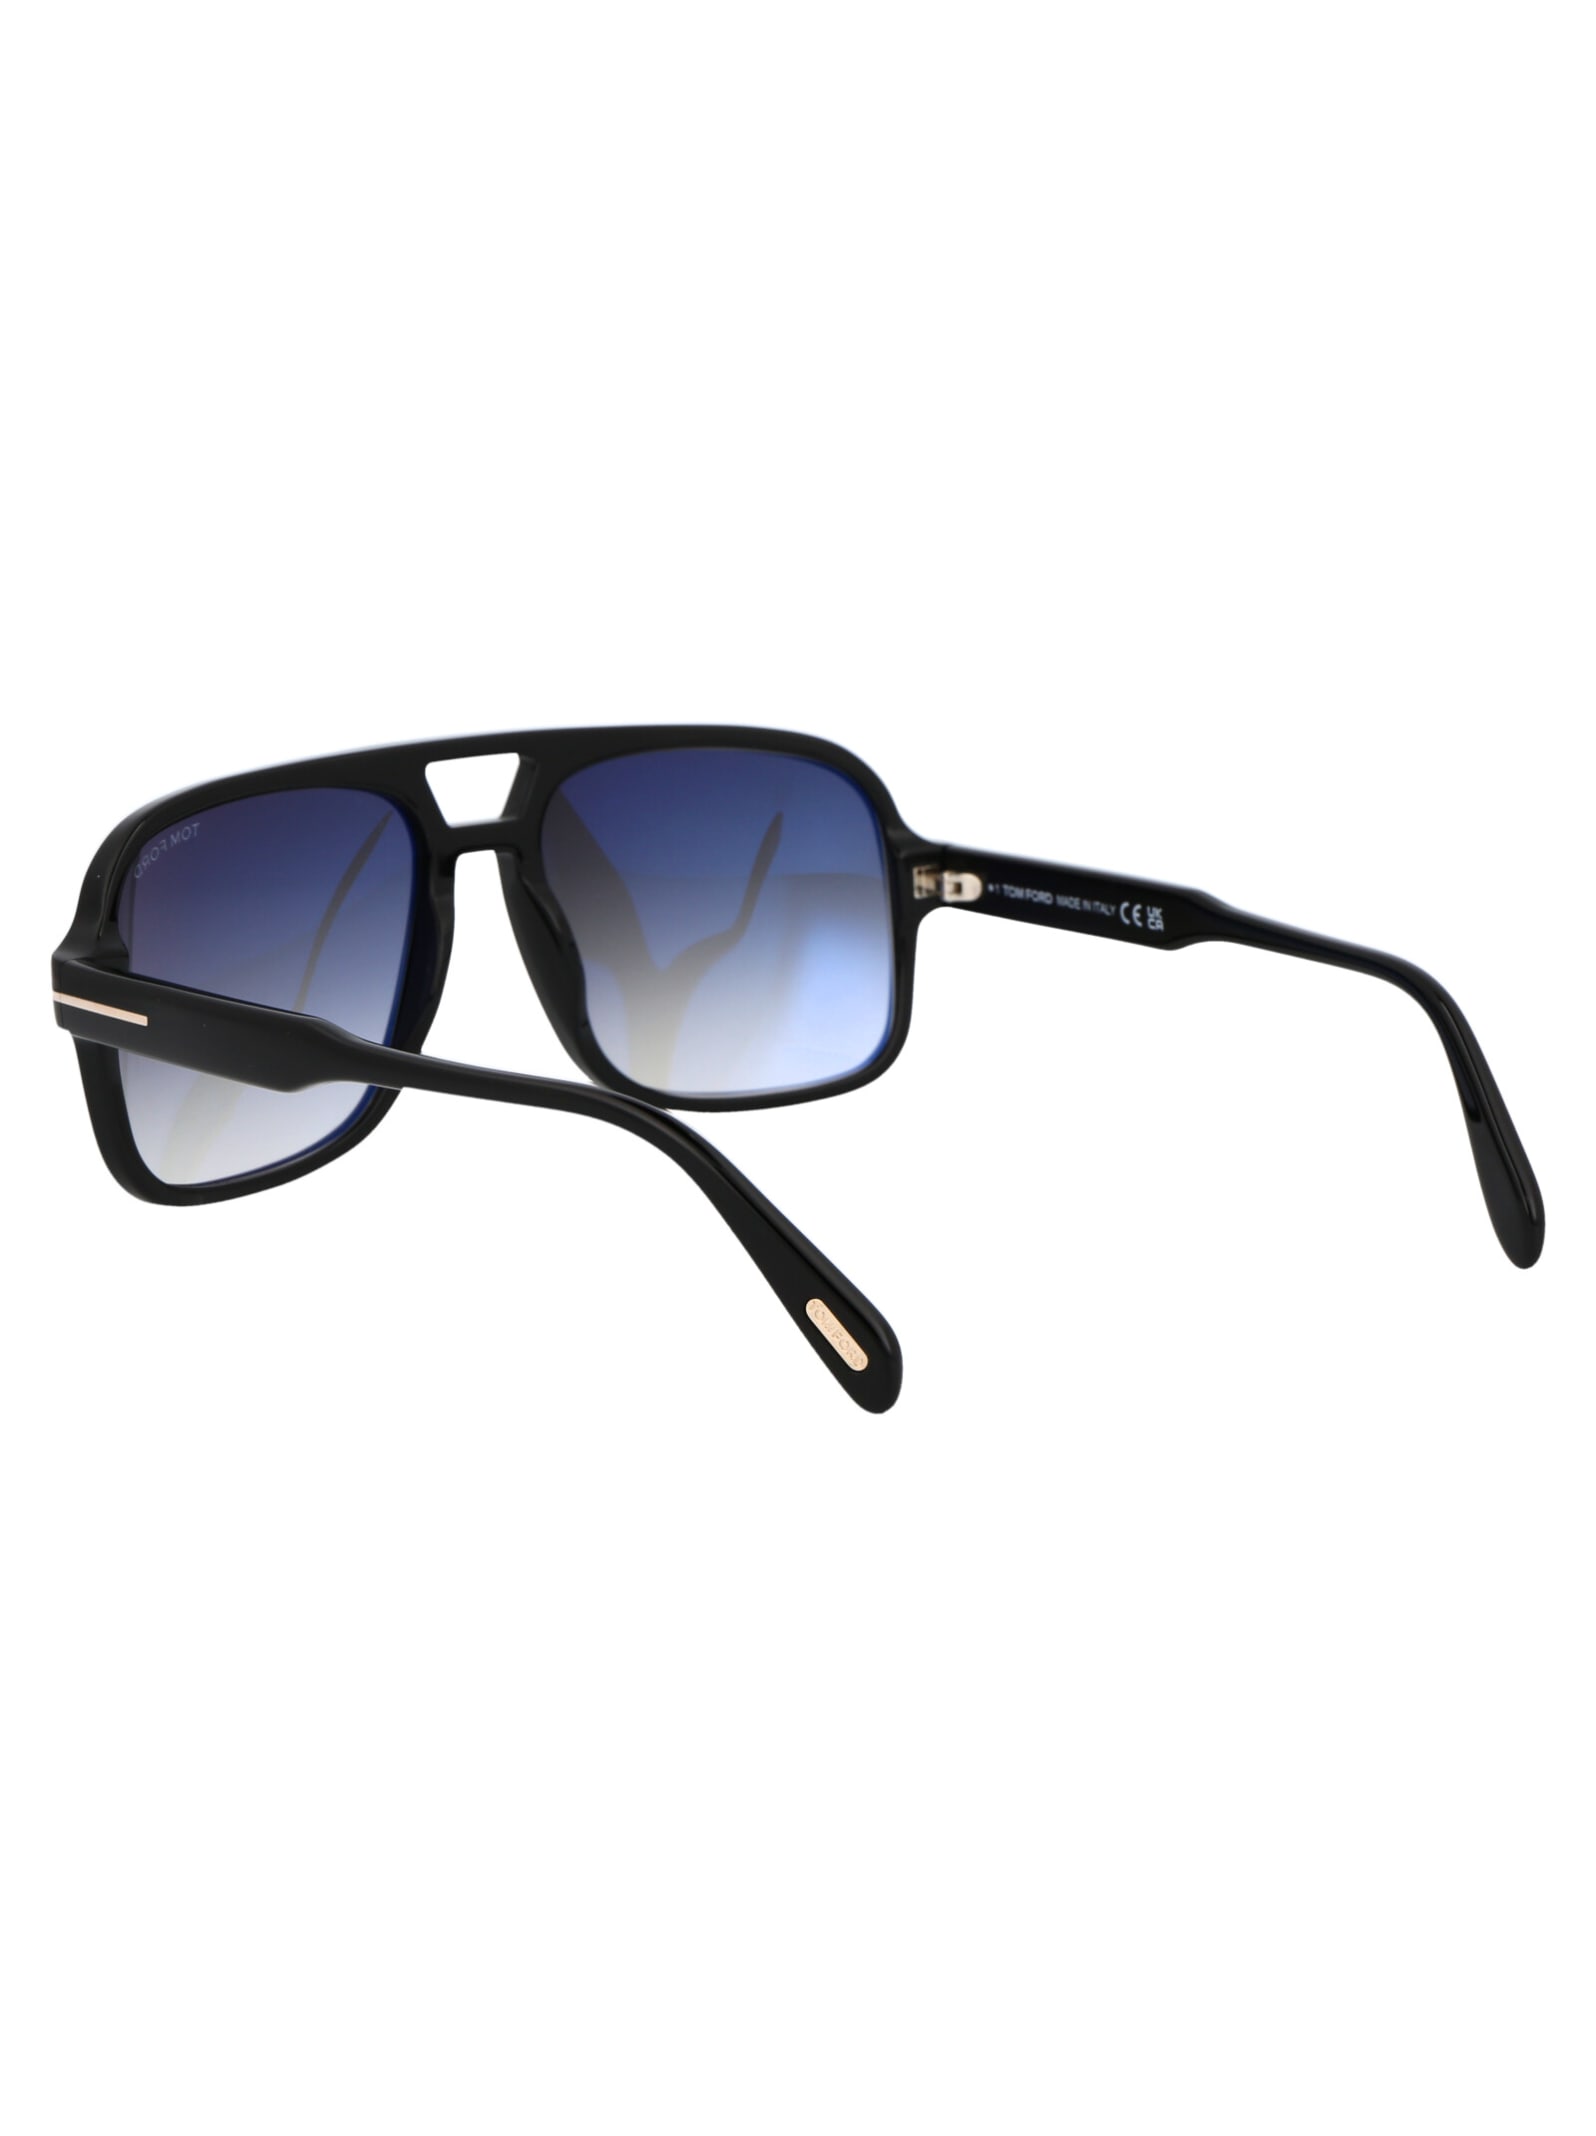 Shop Tom Ford Falconer-02 Sunglasses In 01b Nero Lucido / Fumo Grad